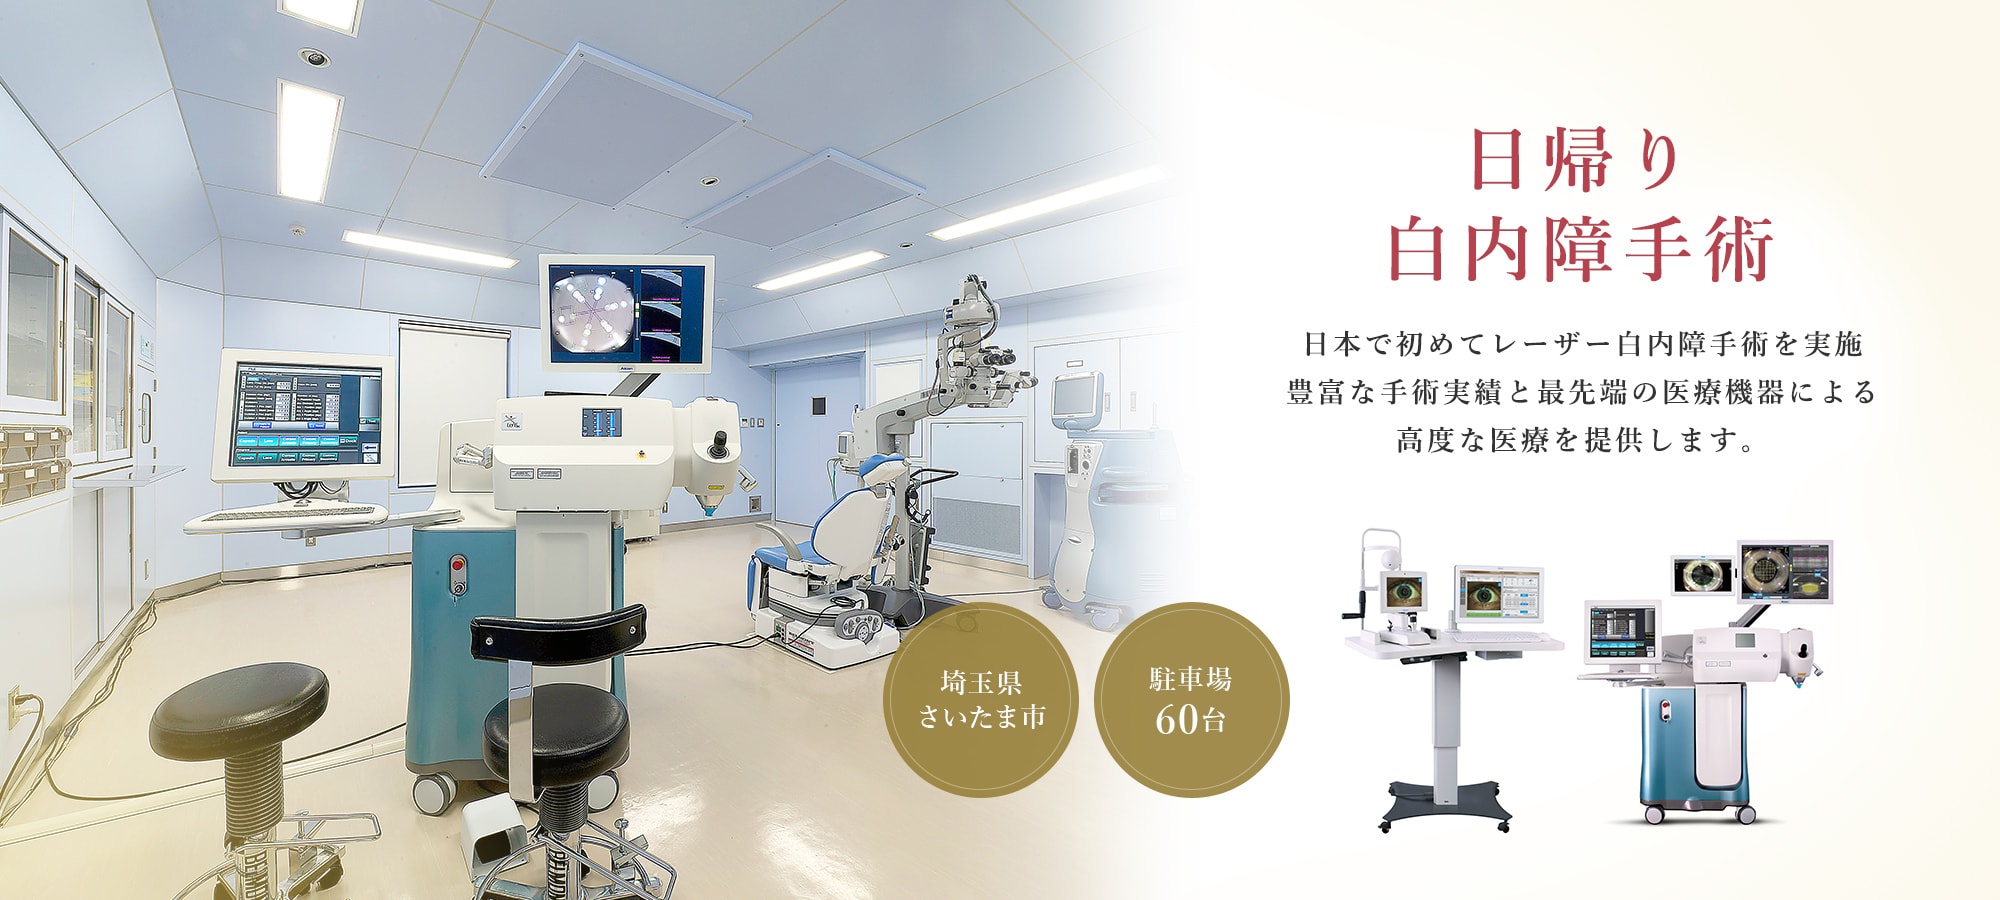 日帰り白内障手術 日本で初めてレーザー白内障手術を実施 豊富な手術実績と最先端の医療機器による高度な医療を提供します。